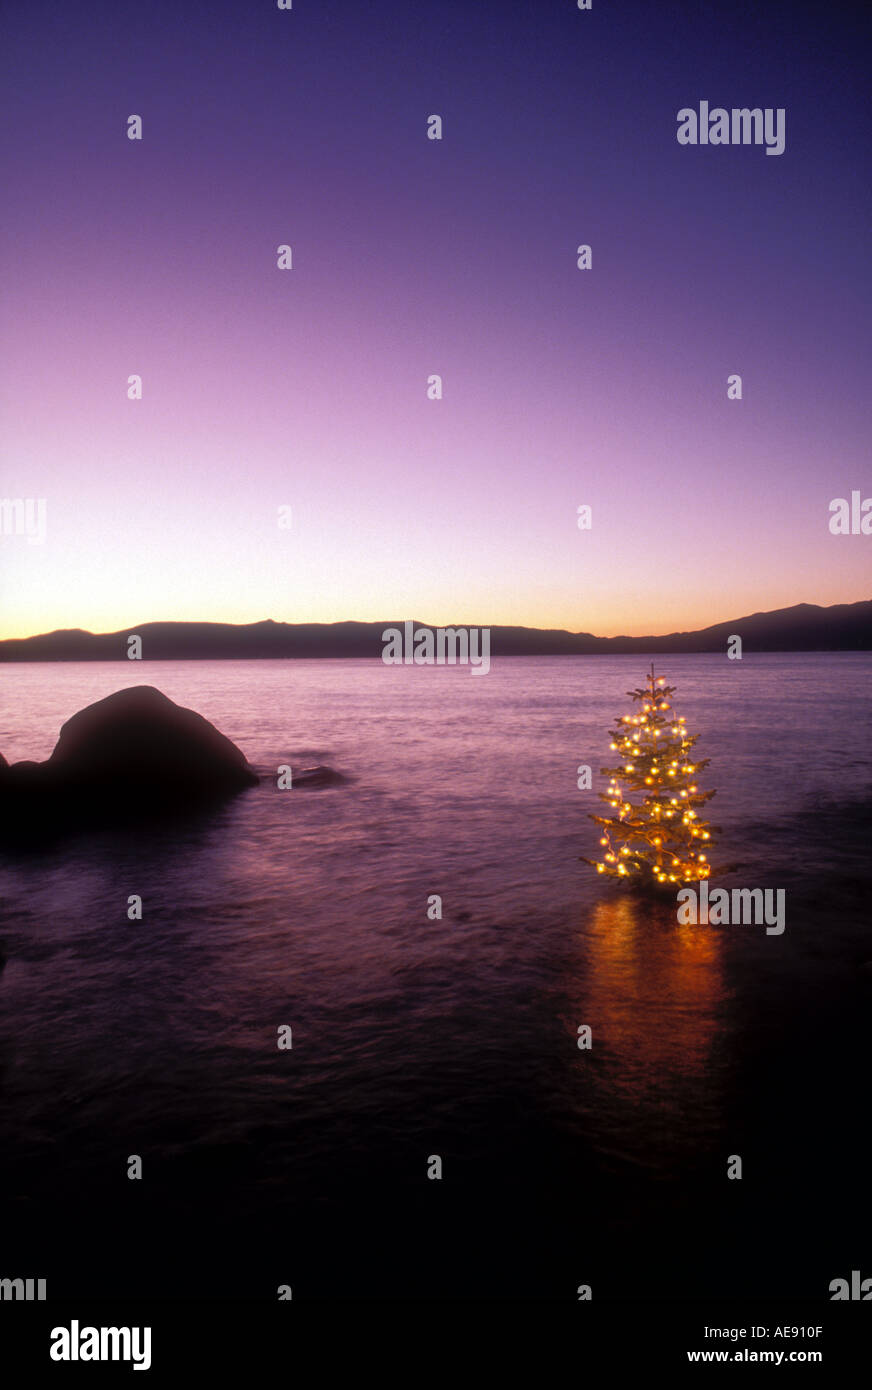 Albero di Natale decorato con luci in acqua Proprietà immagine rilasciata Foto Stock